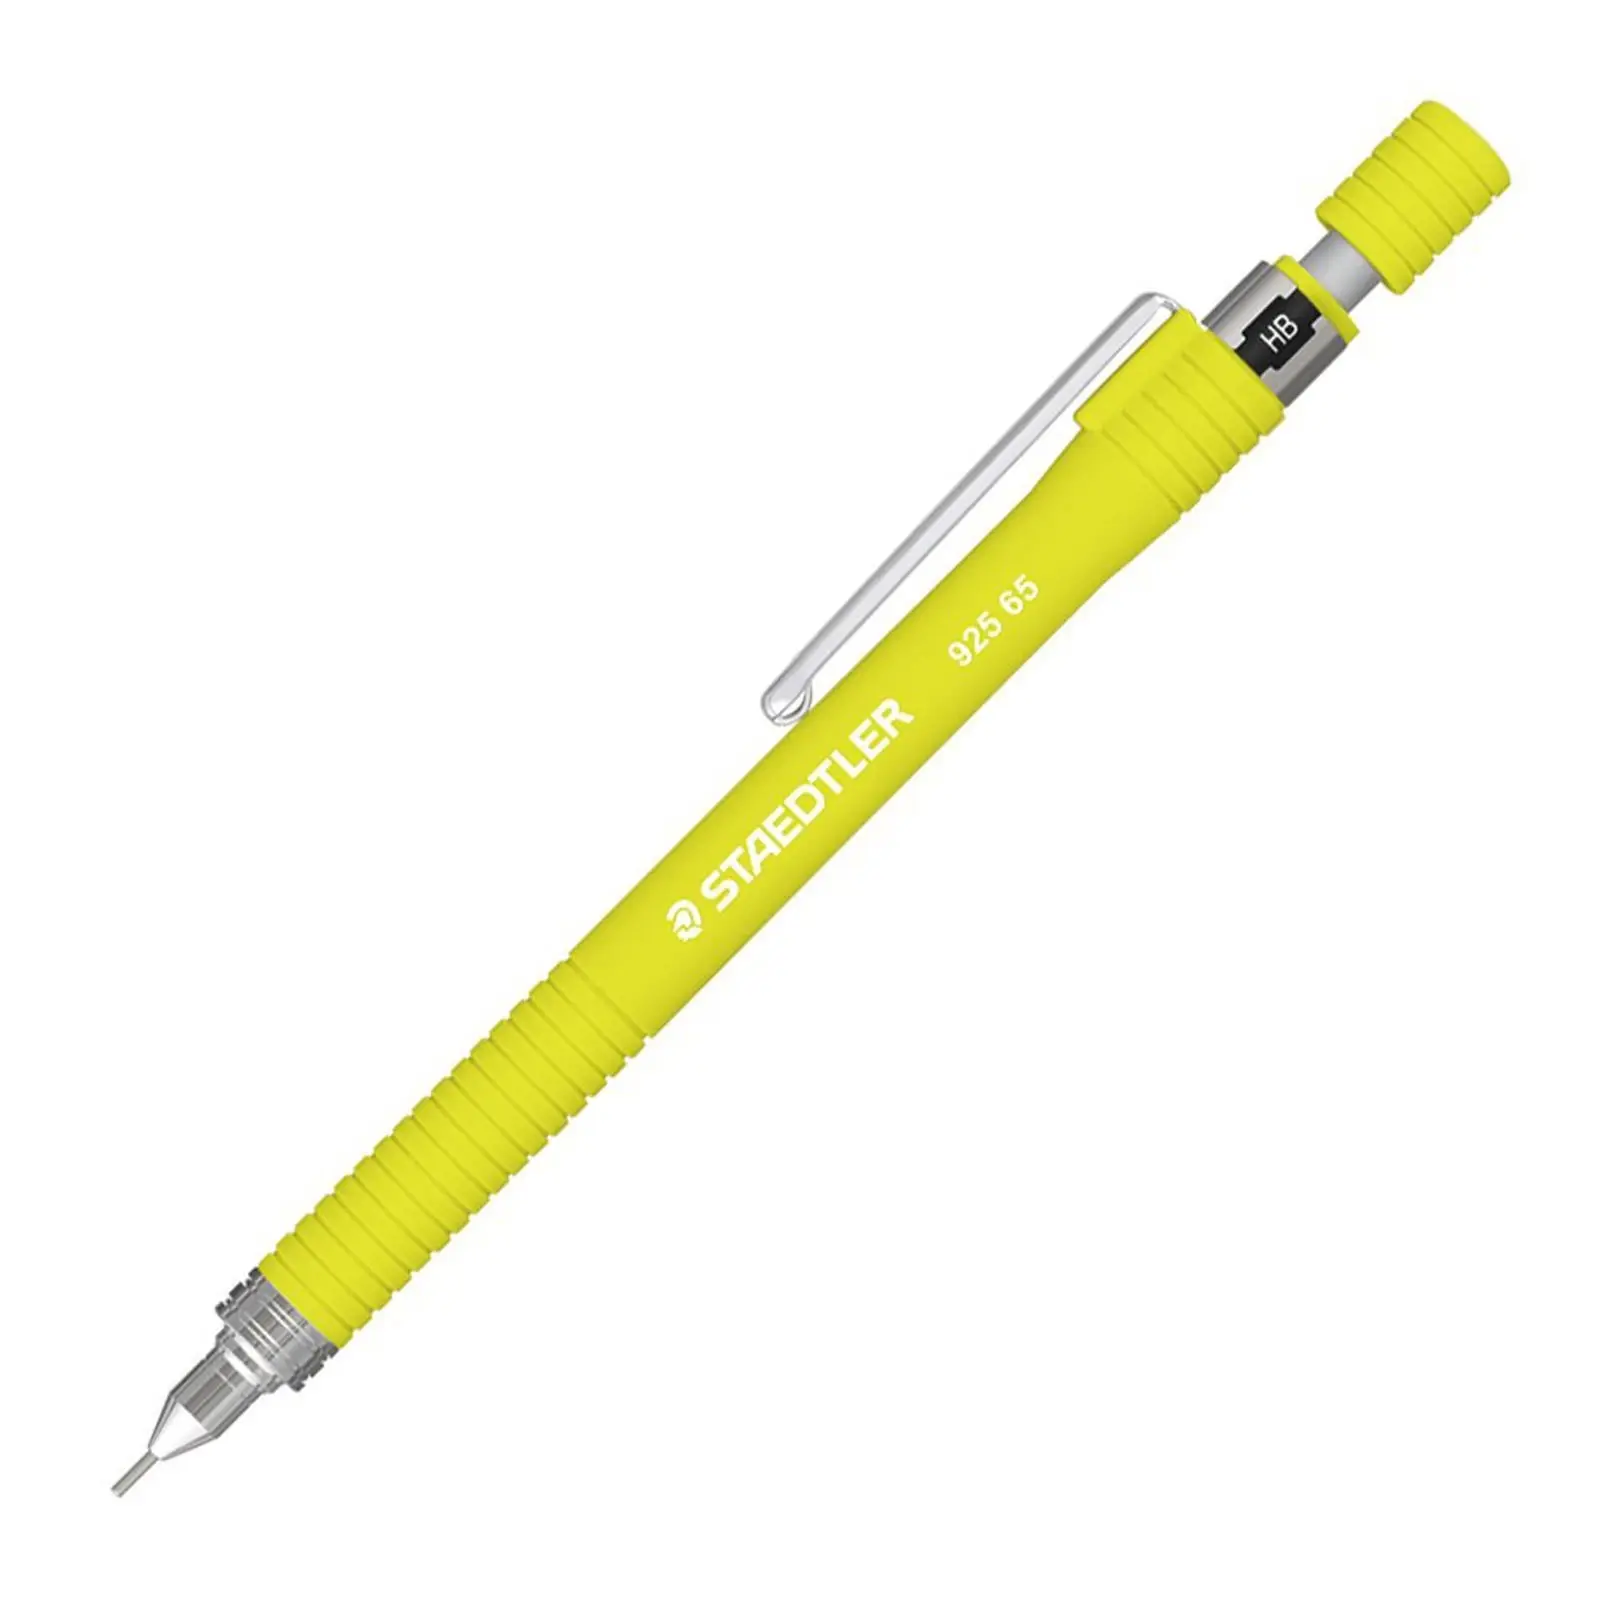 STAEDTLER 925 65 0,5 мм графитовый чертёжный механический карандаш синий желтый оранжевый розовый белый 5 цветов